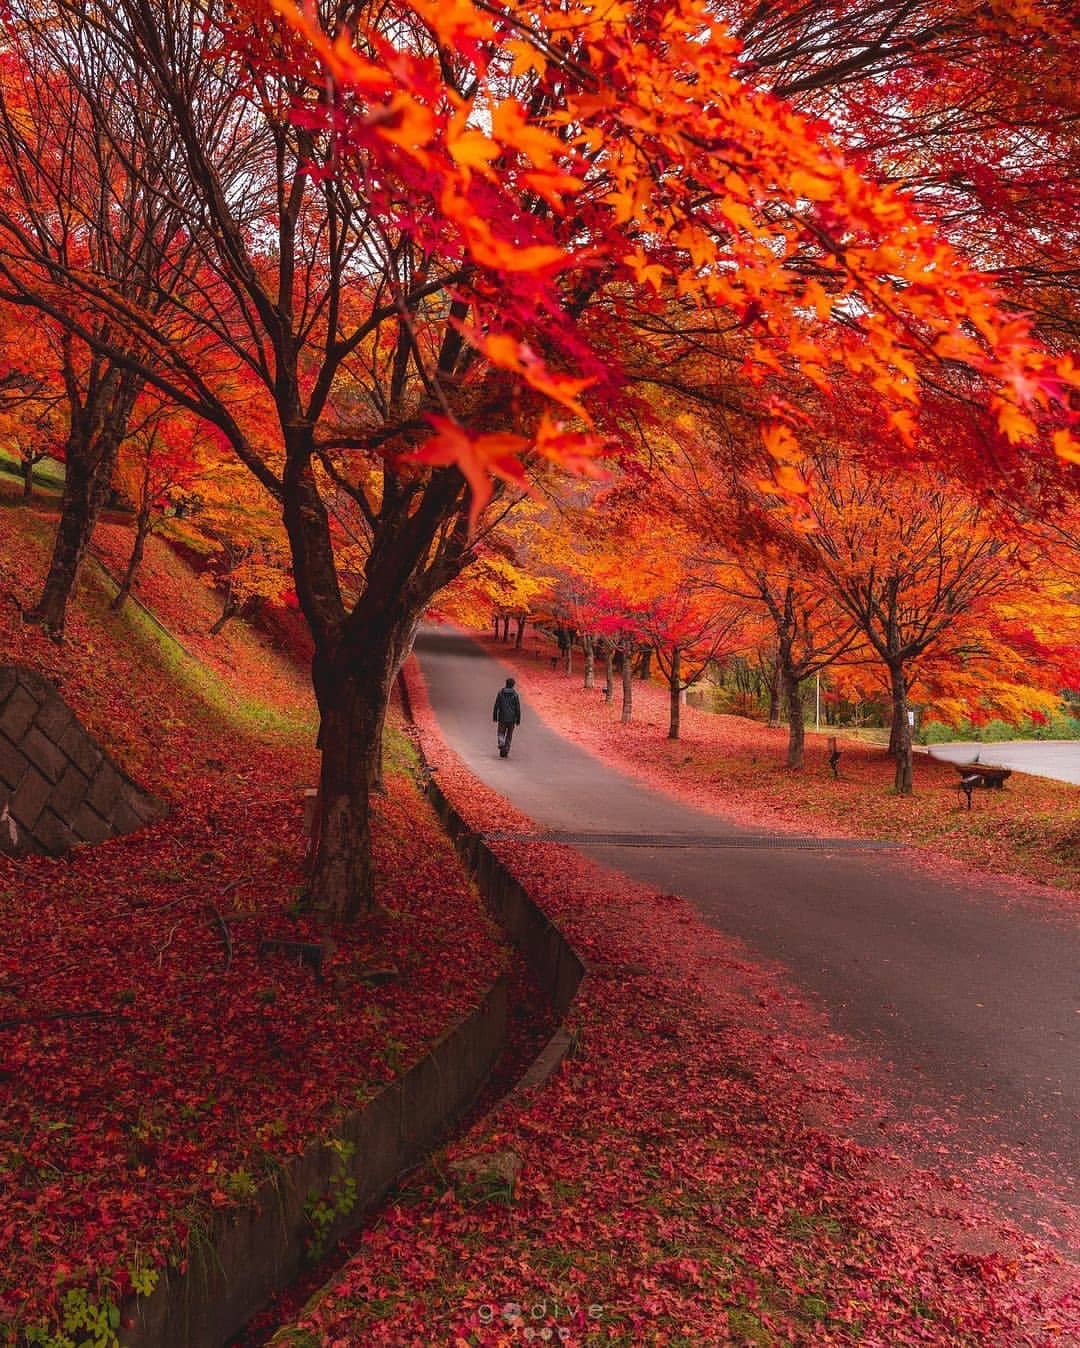 en otoño los árboles se vuelven rojos y anaranjados